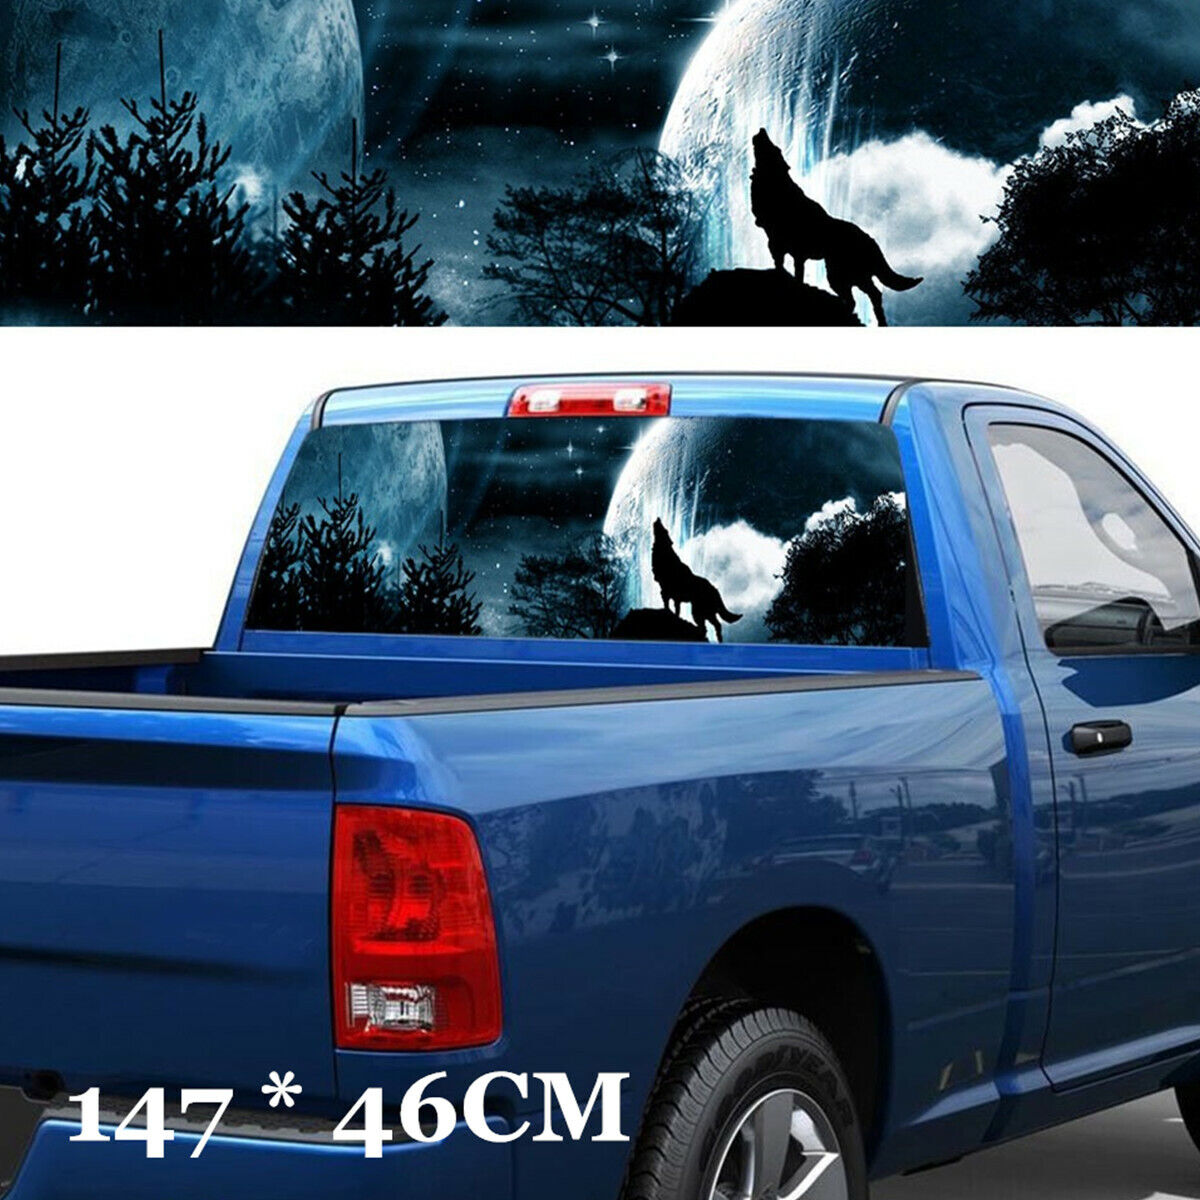  Wolf Howling Sky Galaxy Vinyl decal sticker For Car/Truck Rear Window Custom